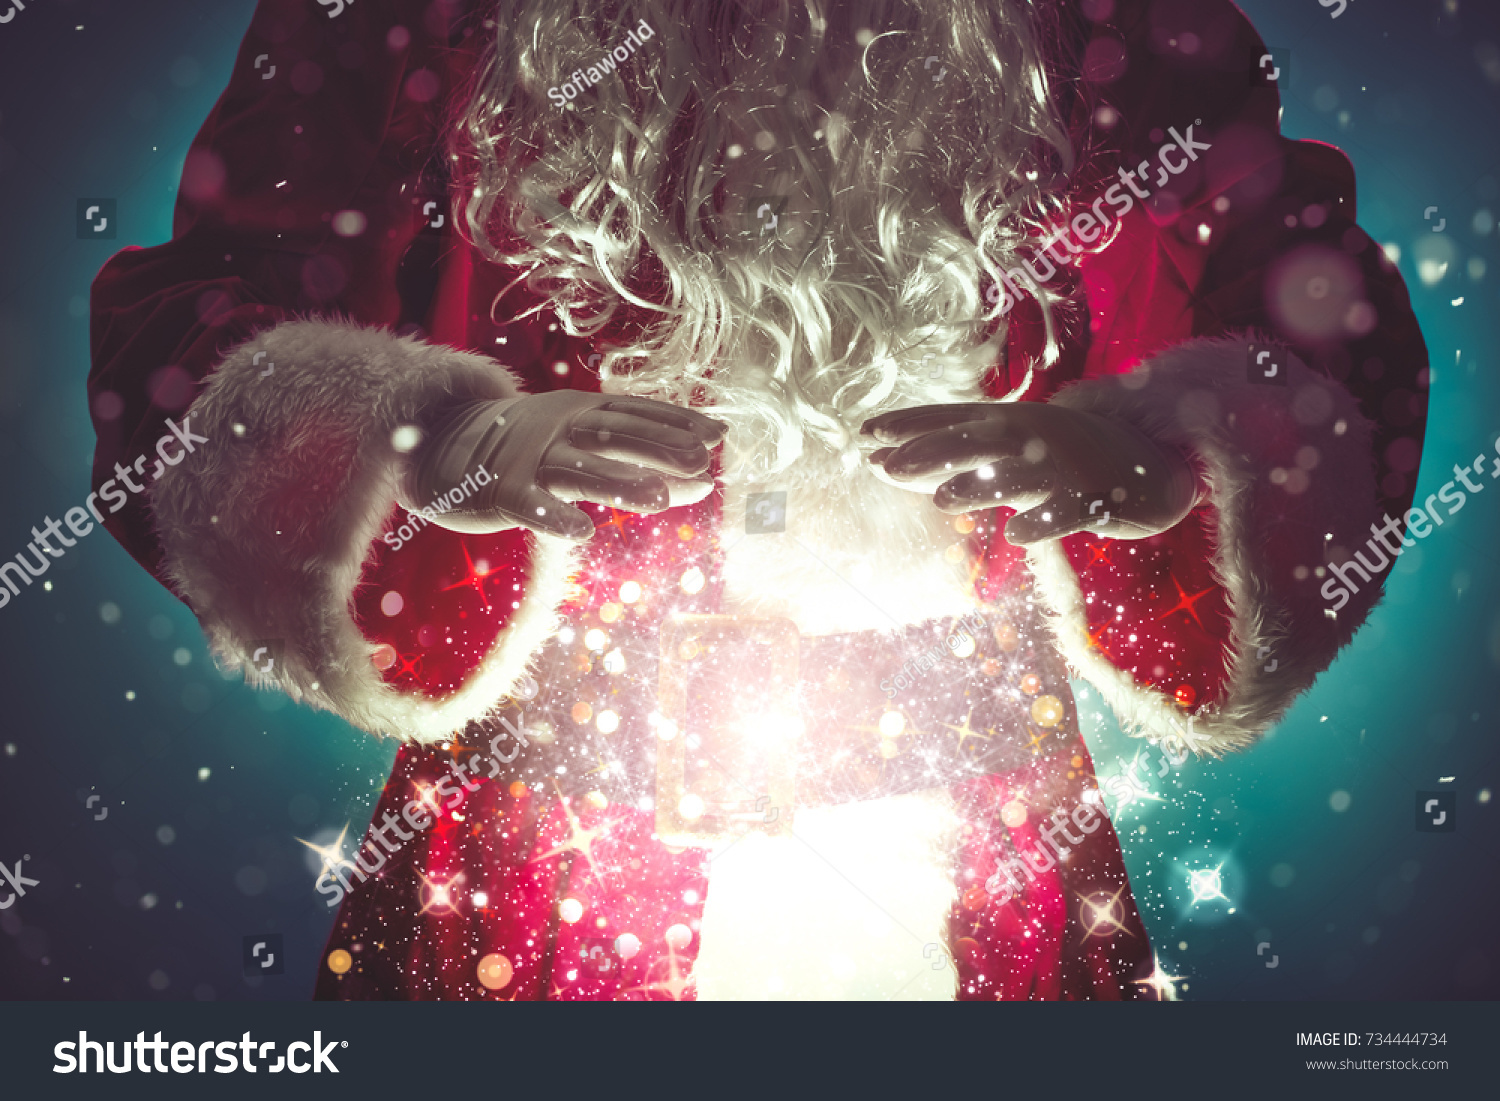 Santa Claus with magic Christmas lights,Christmas concept #734444734